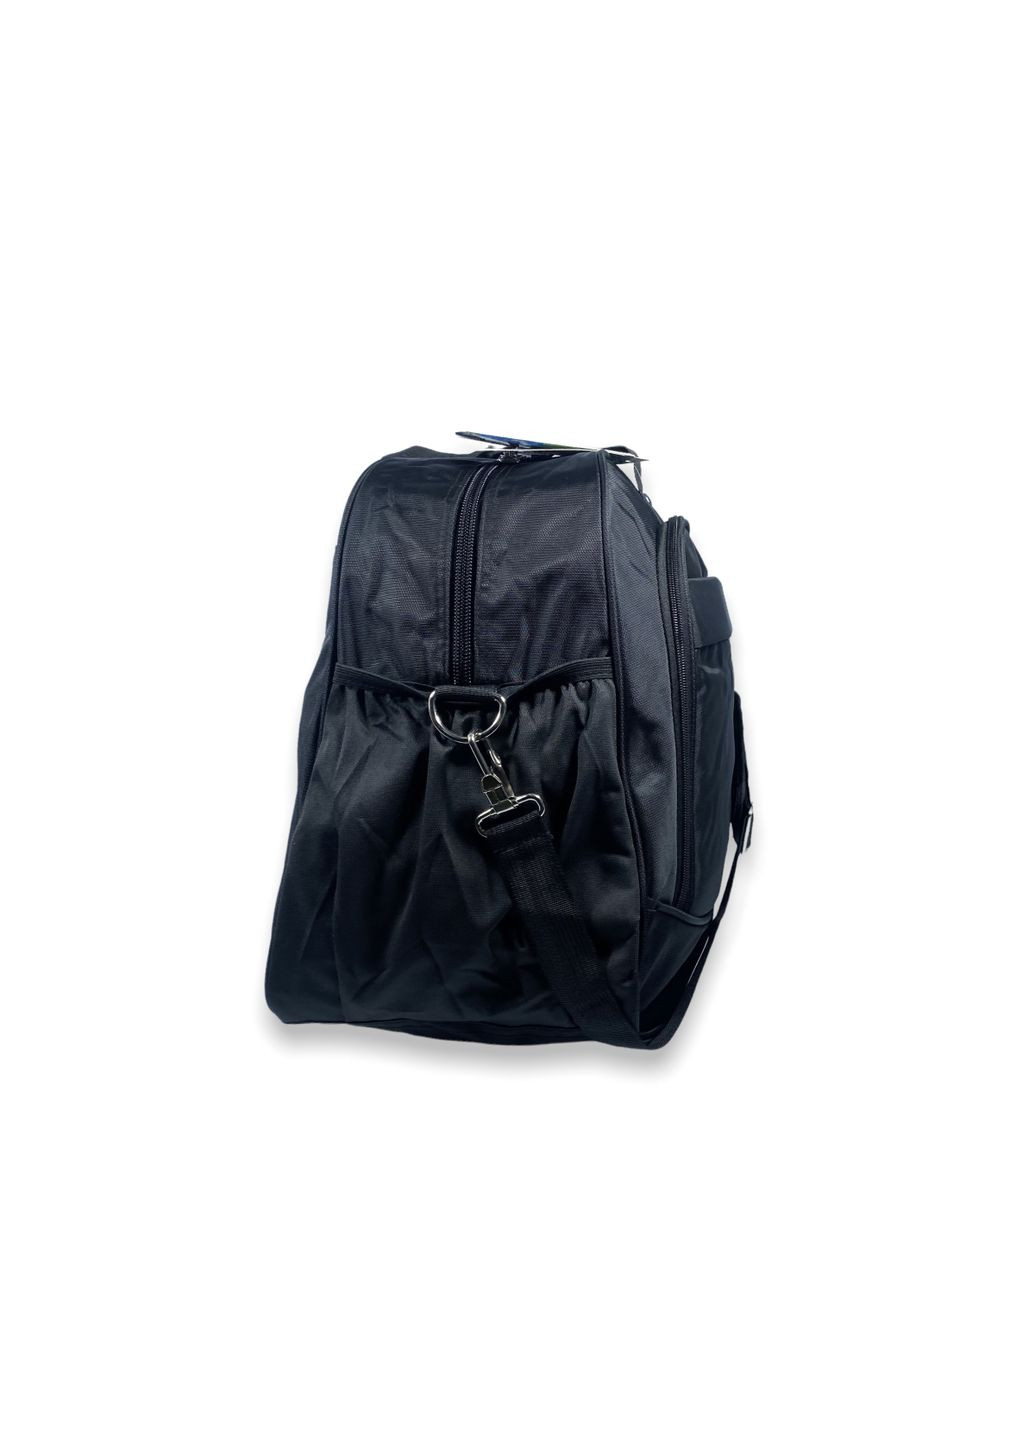 Дорожная сумка 60 л одно отделение внутренний карман два фронтальных кармана размер: 60*40*25 см черный Tongsheng (285814817)